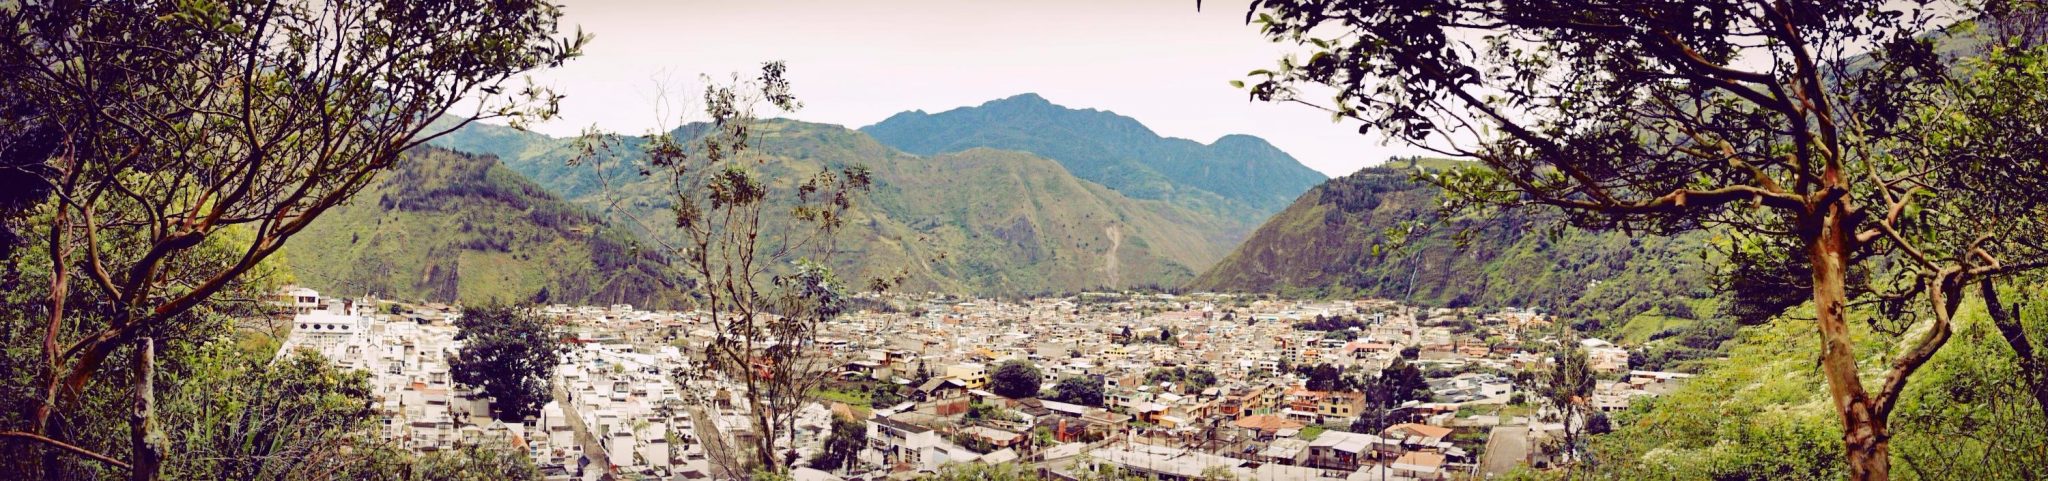 Banos Ecuador Panorama